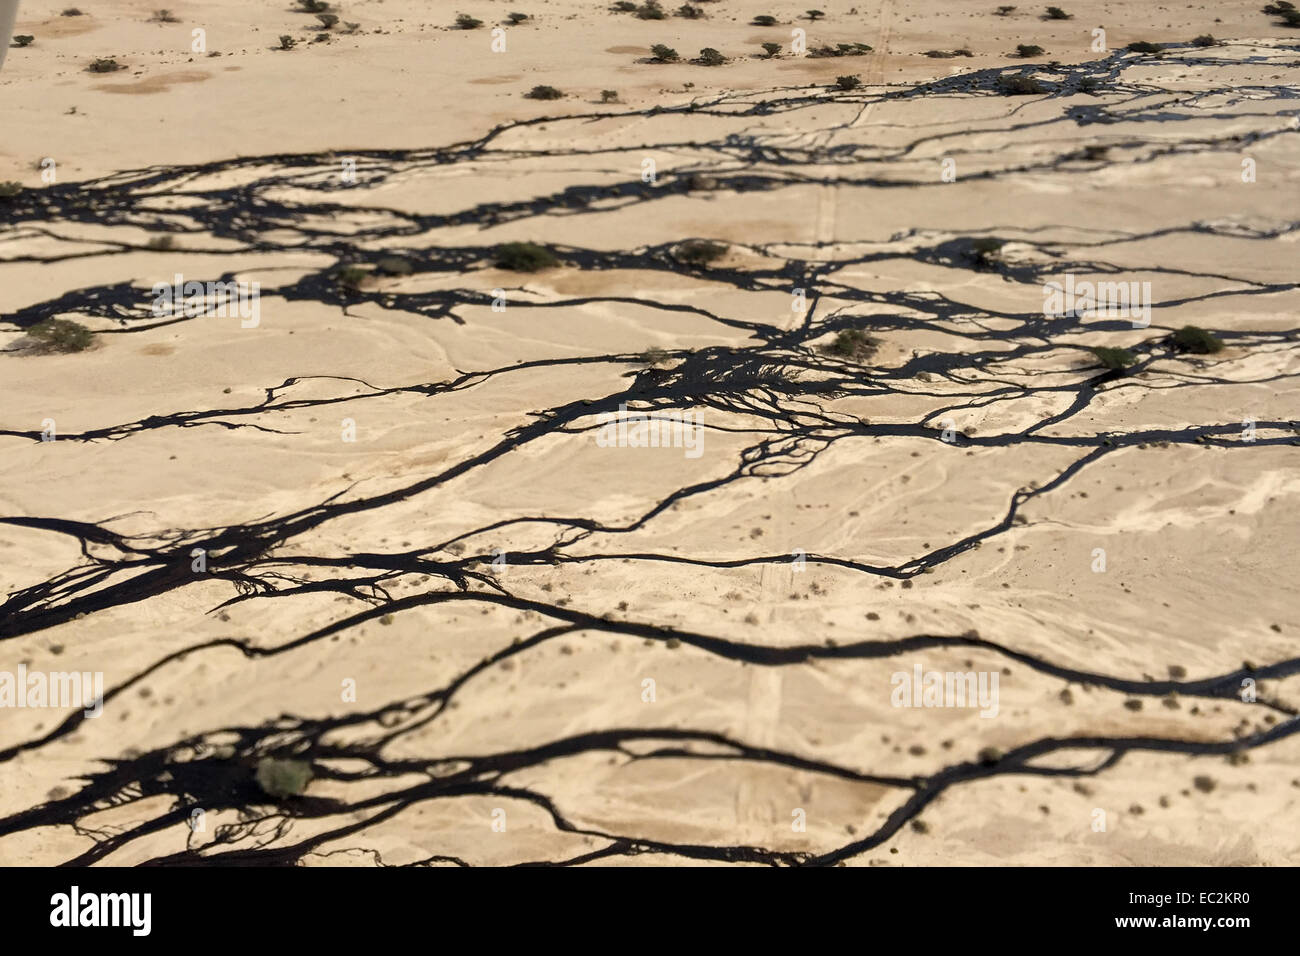 (141208)--JERUSALEM, 8. Dezember 2014 (Xinhua)--Handout Luftbild zur Verfügung gestellt durch das israelische Ministerium für Umweltschutz eine große Öl verschütten, verursacht durch eine Öl-Pipeline verletzt während der Wartung in der Arava-Wüste, Südisrael, am 4. Dezember 2014 zeigt. Eine israelische Pipeline-Unternehmen, deren Pipeline letzte Woche verletzt wurde, räumte ein, dass die Ölpest mindestens dreimal größer als zuvor berichtet, Umweltministerium Schutz Israels, sagte am Montag. (Xinhua/JINI/israelische ENVIROMENTAL PROTECTION MINSTRY) Stockfoto